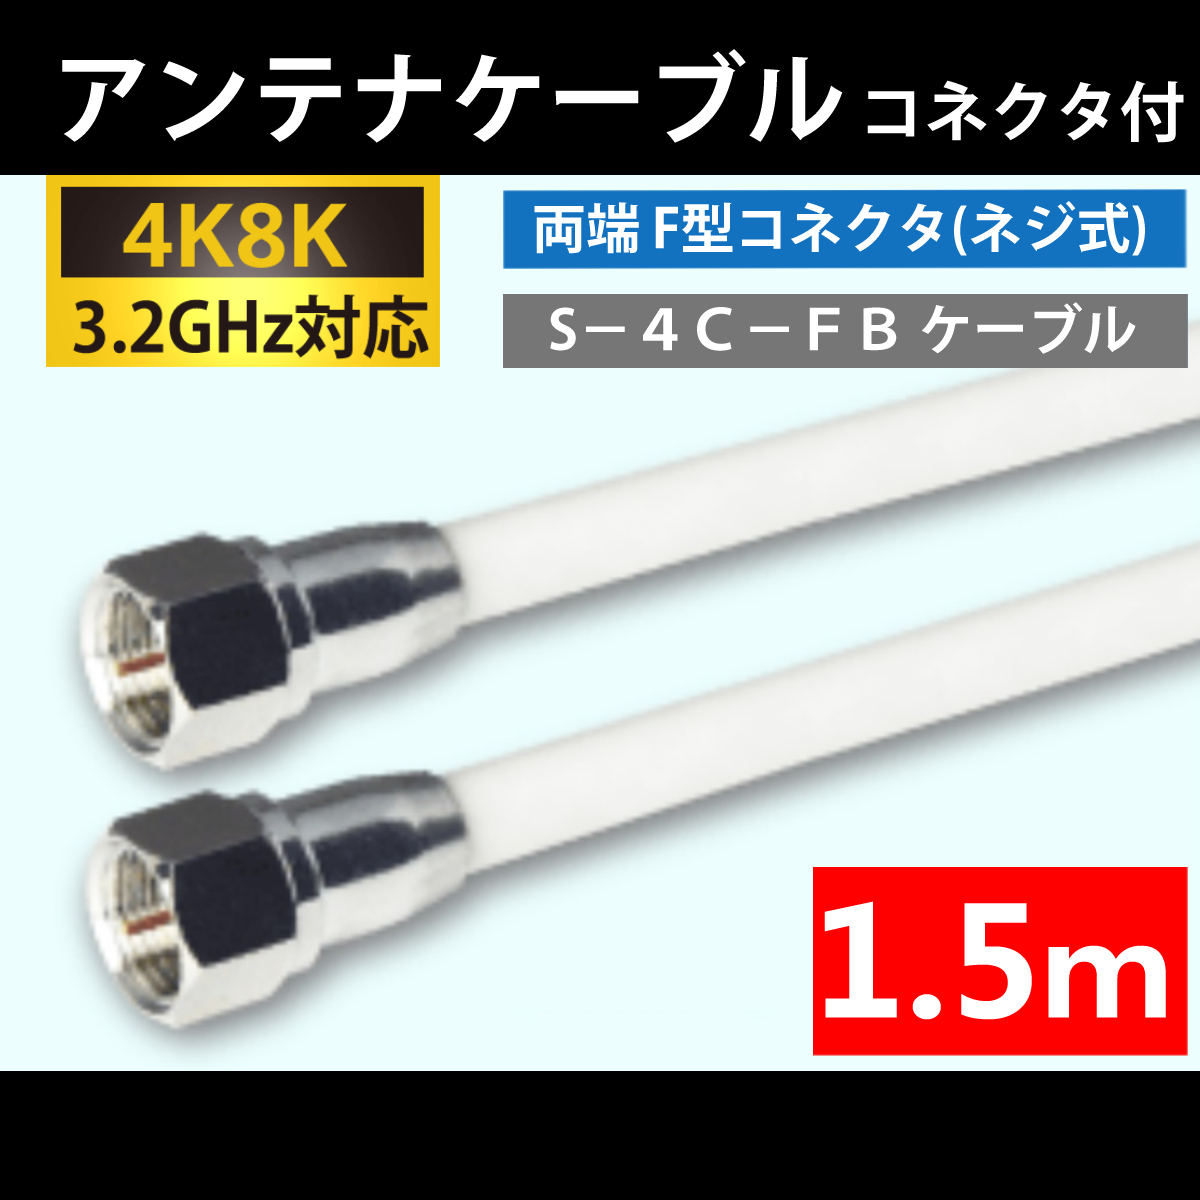 【送料無料】 4K8K対応 / アンテナケーブル 1.5m / 両端 F型プラグ付 / 4C同軸ケーブル_画像1